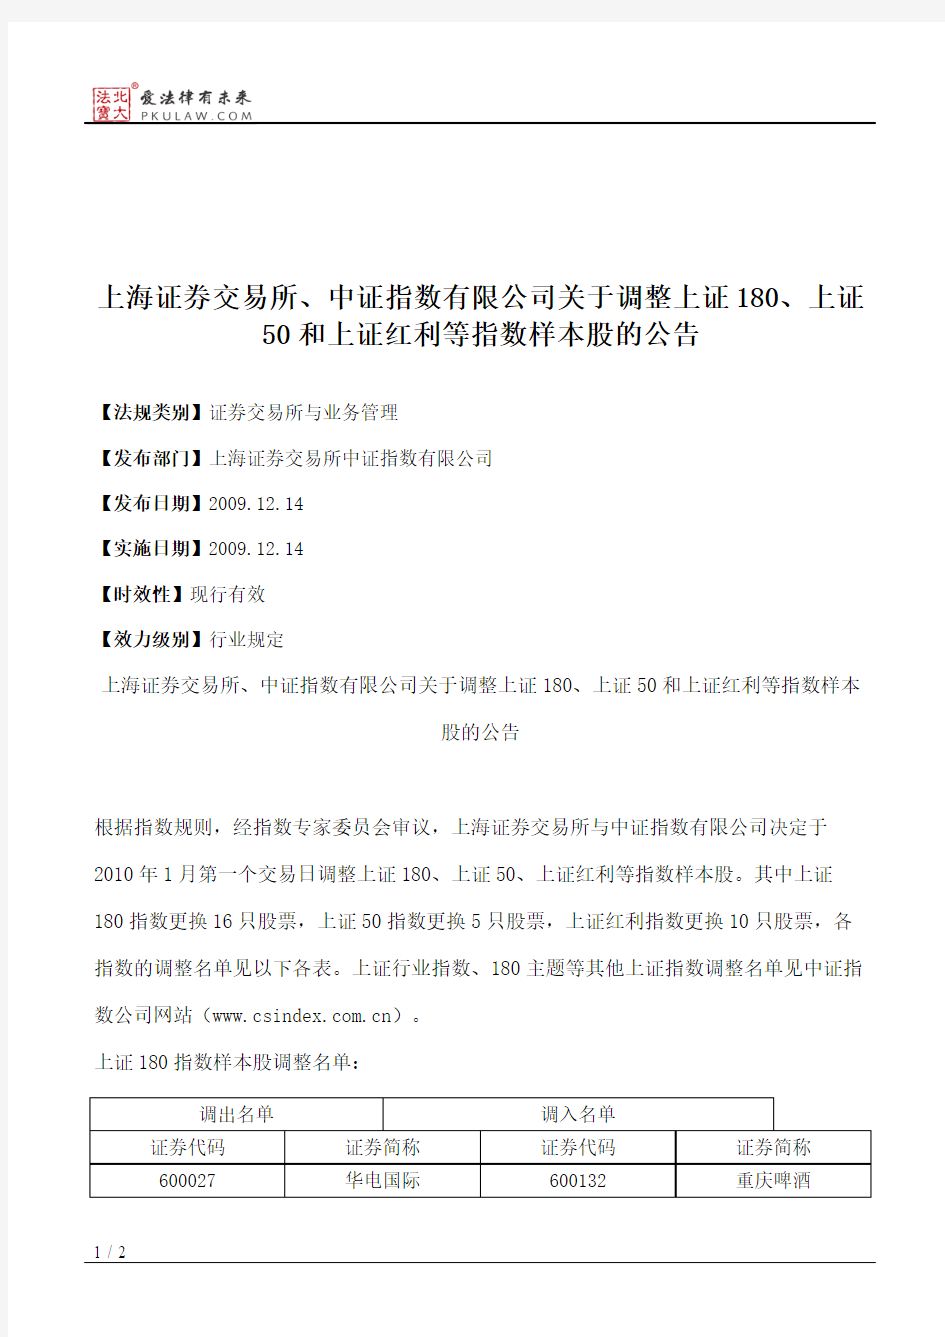 上海证券交易所、中证指数有限公司关于调整上证180、上证50和上证